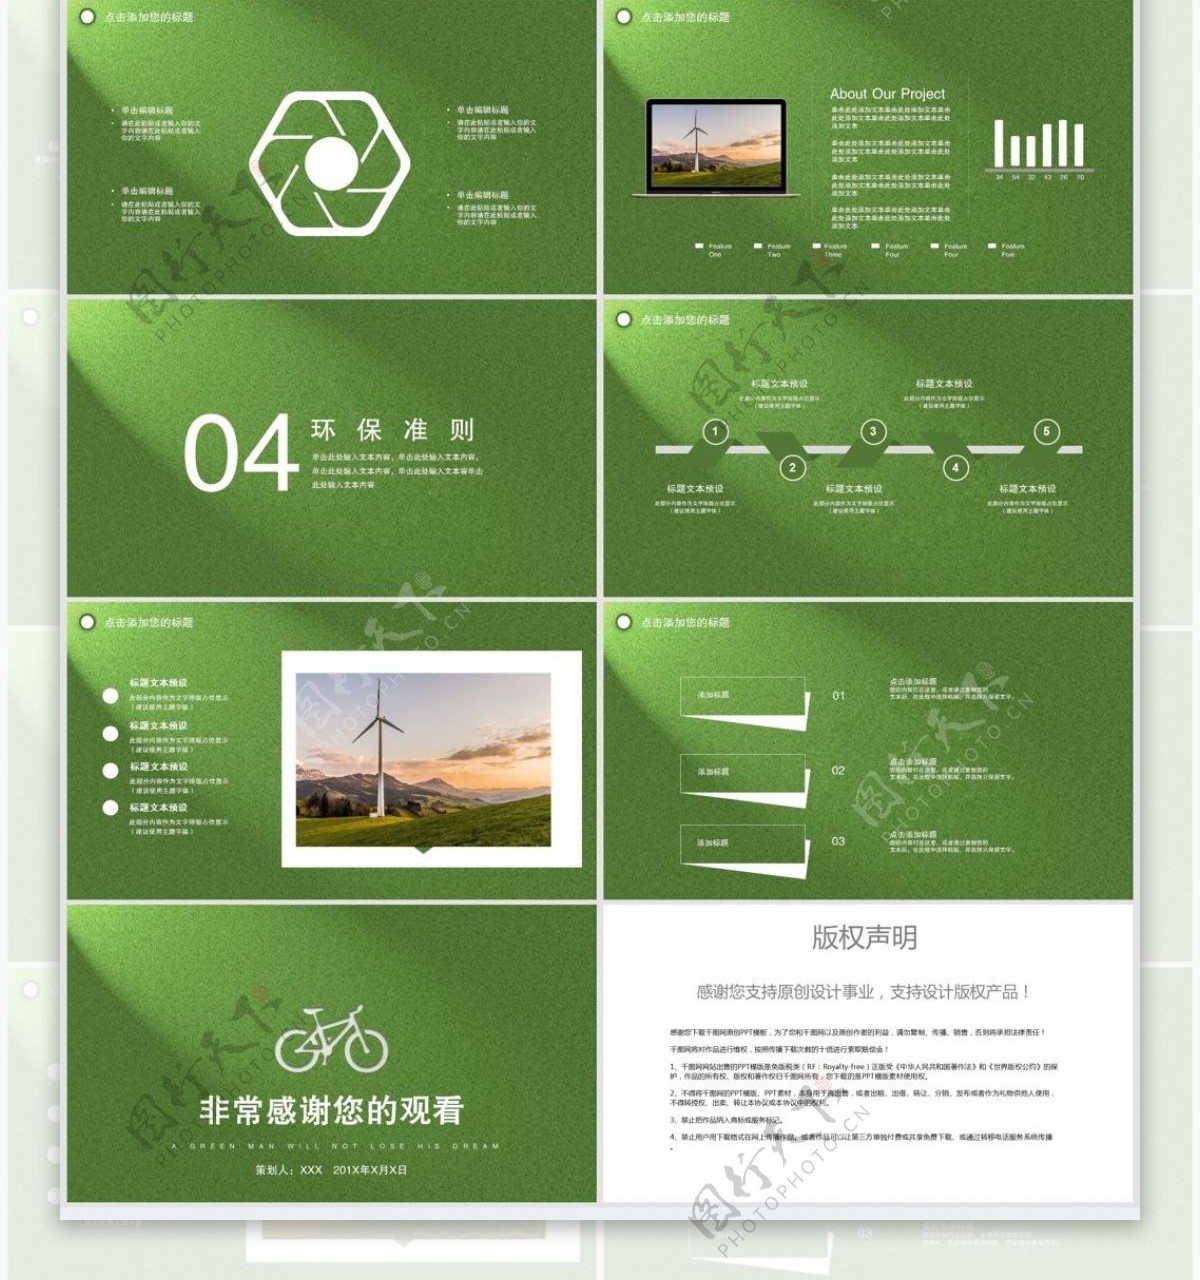 38绿色简约低碳环保宣传PPT模板